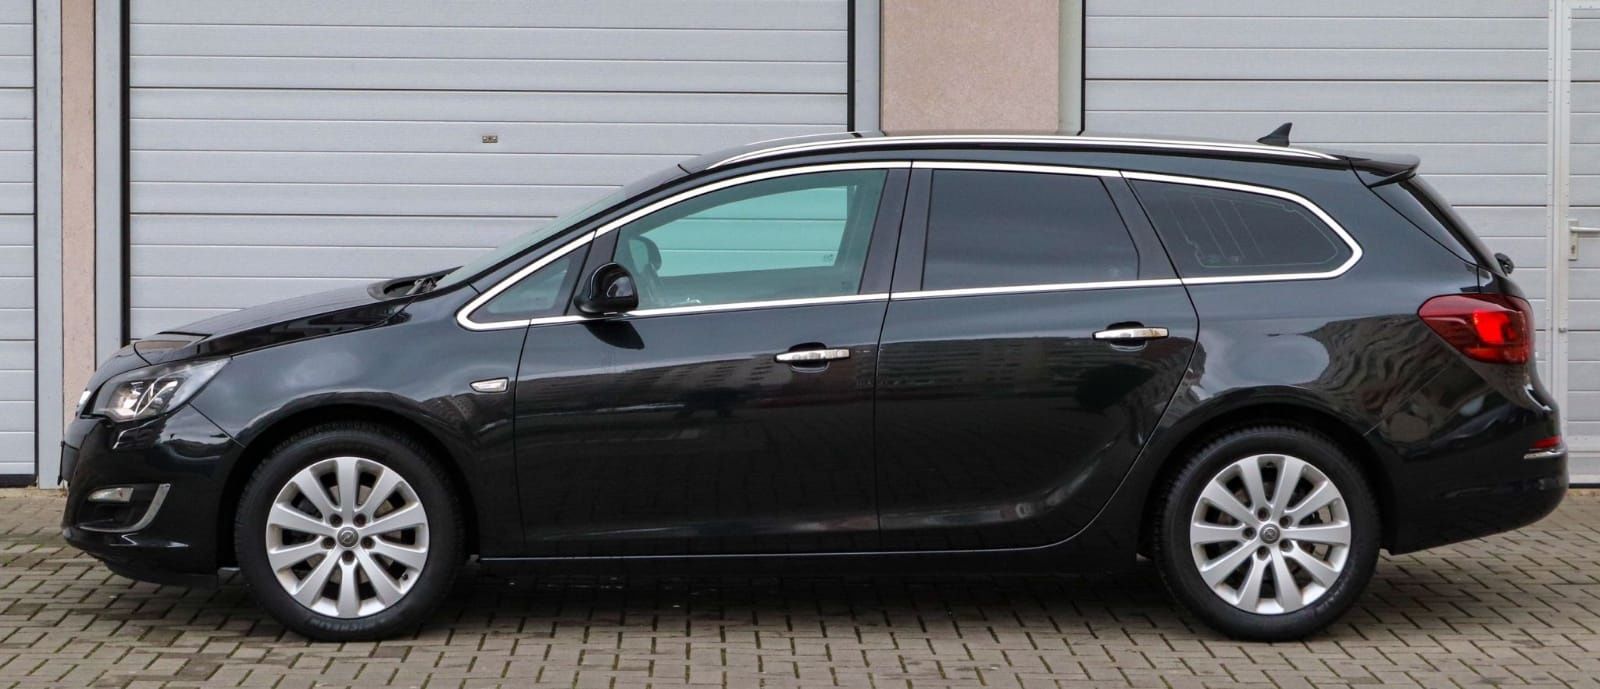 Opel astra"Facelift"model 2013 Led-Xenon Navigate Crom Pachet  8Jante!